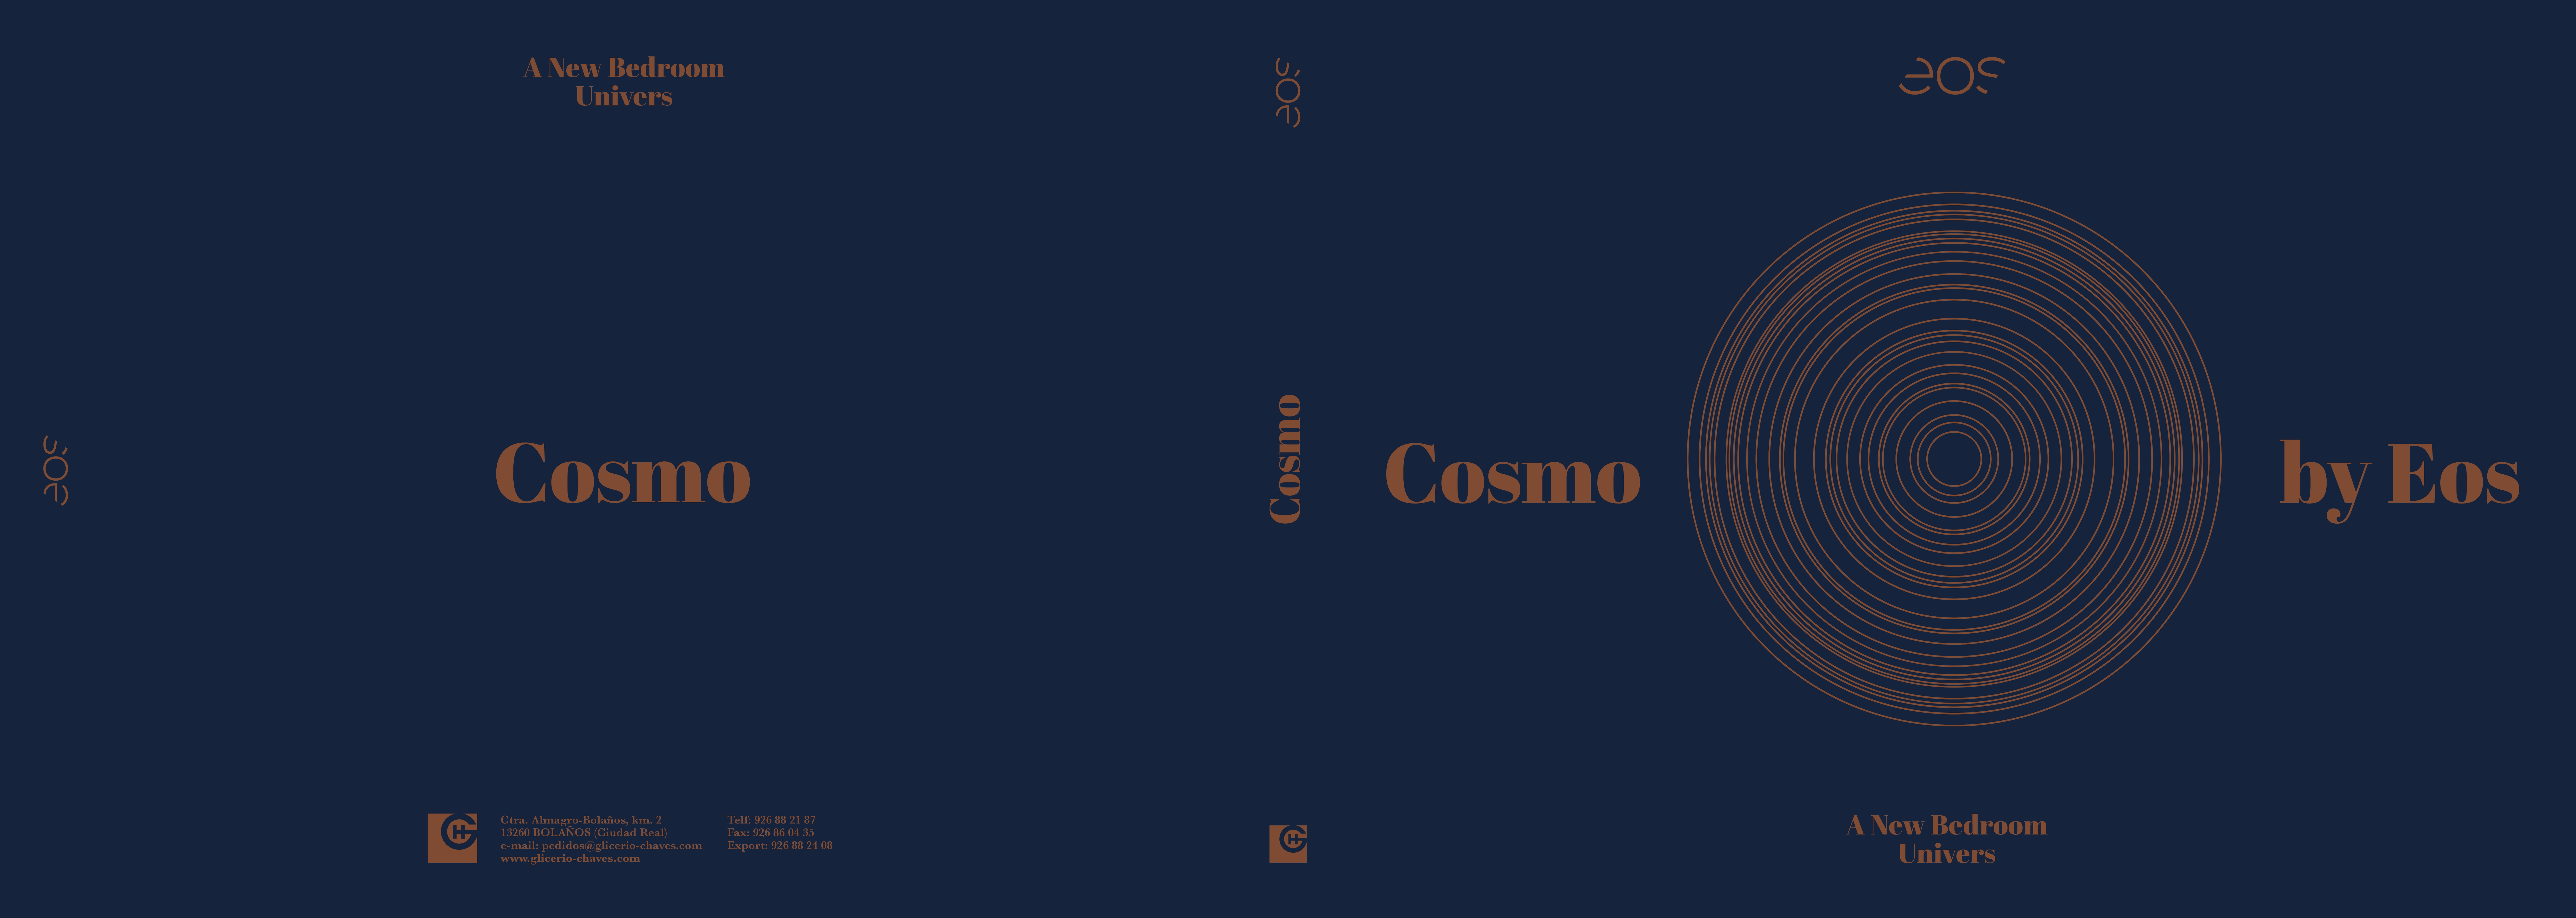 Catalogo-Eos-Cosmos